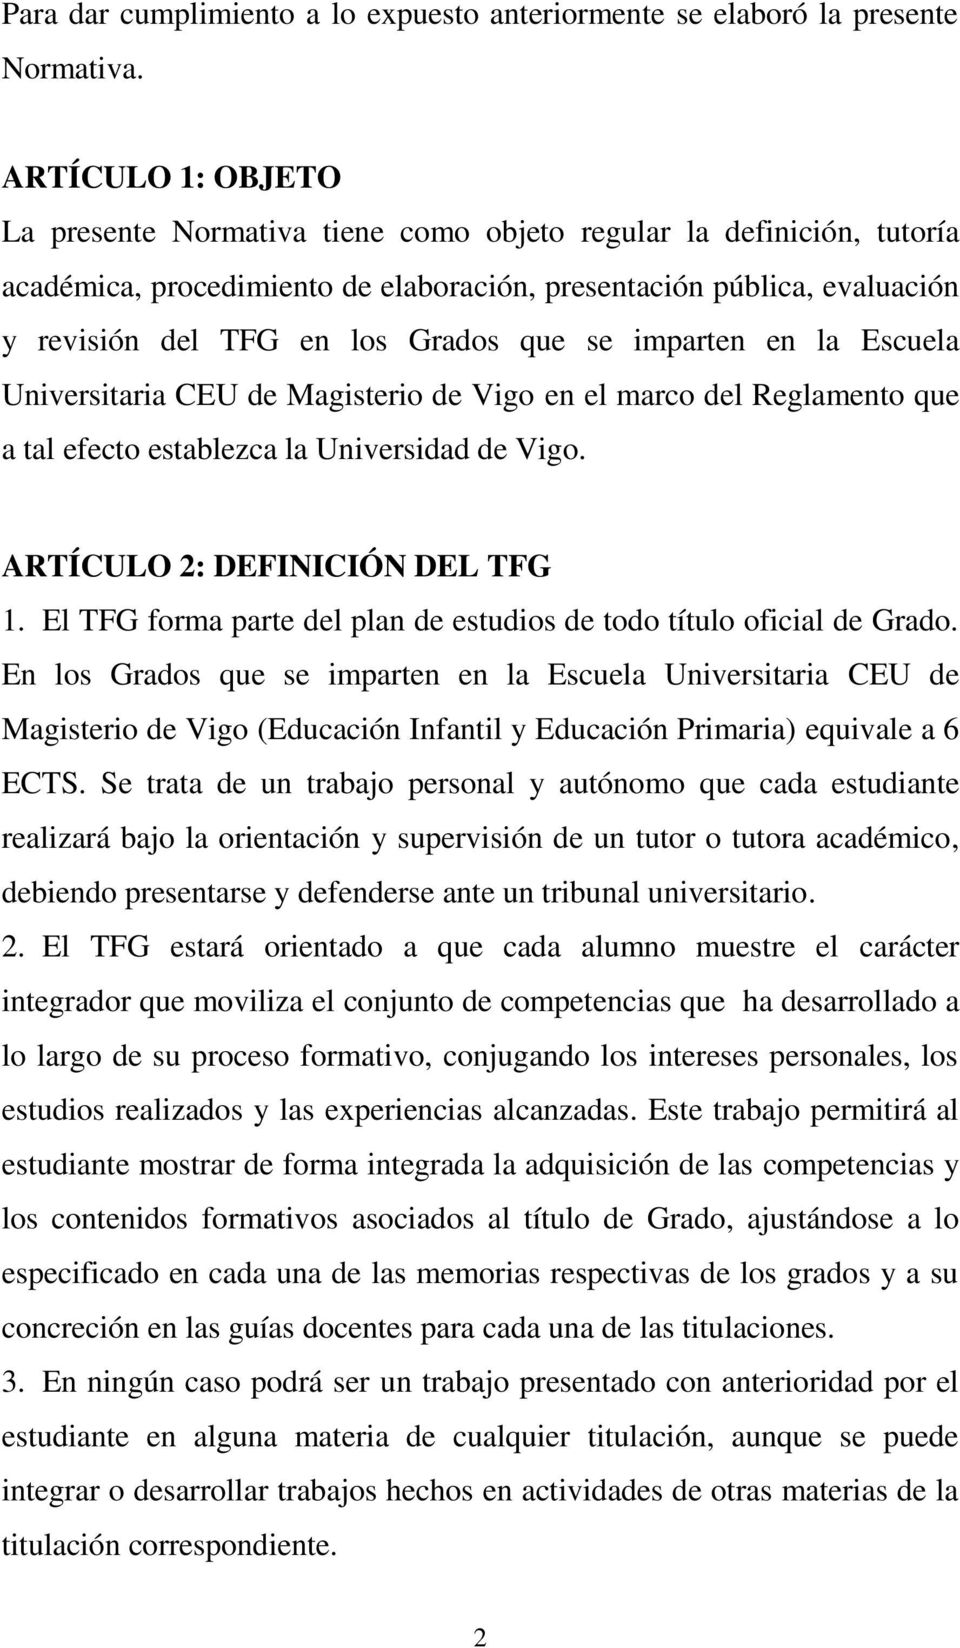 que se imparten en la Escuela Universitaria CEU de Magisterio de Vigo en el marco del Reglamento que a tal efecto establezca la Universidad de Vigo. ARTÍCULO 2: DEFINICIÓN DEL TFG 1.